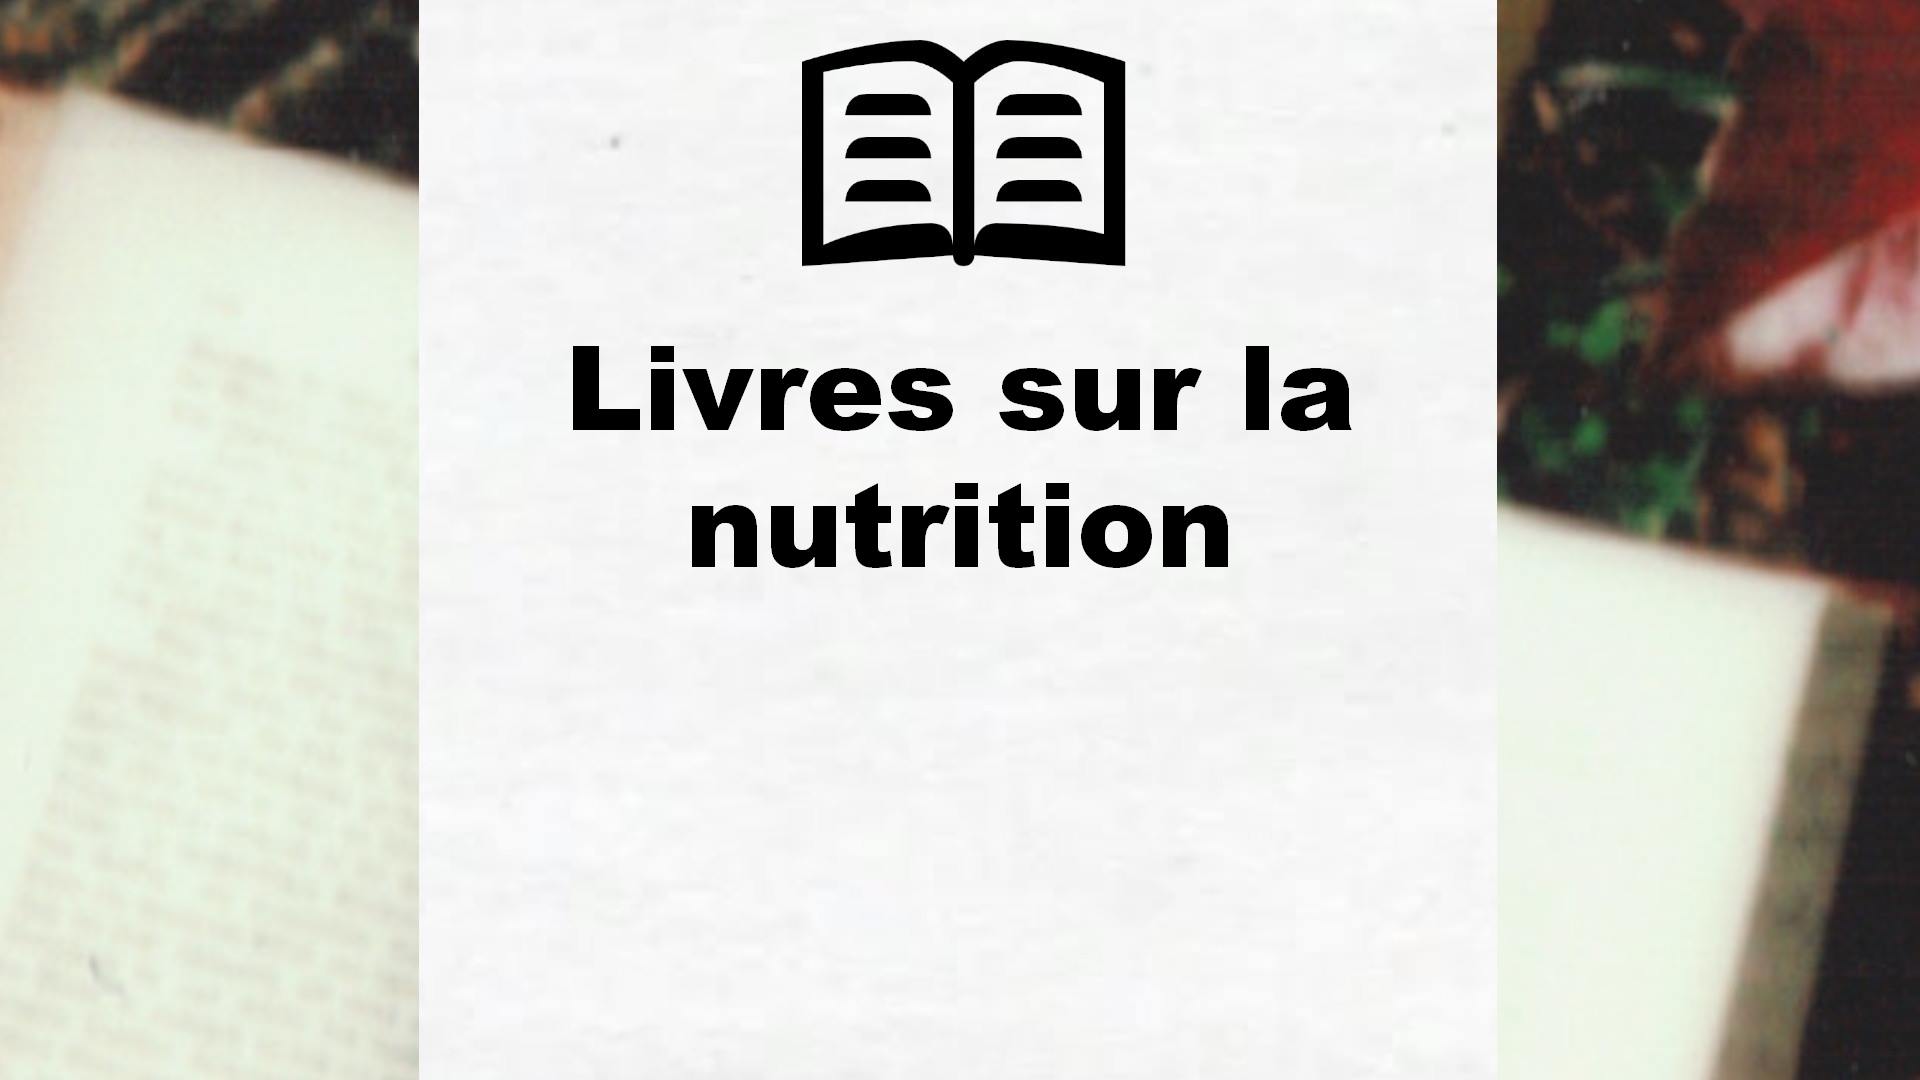 Livres sur la nutrition